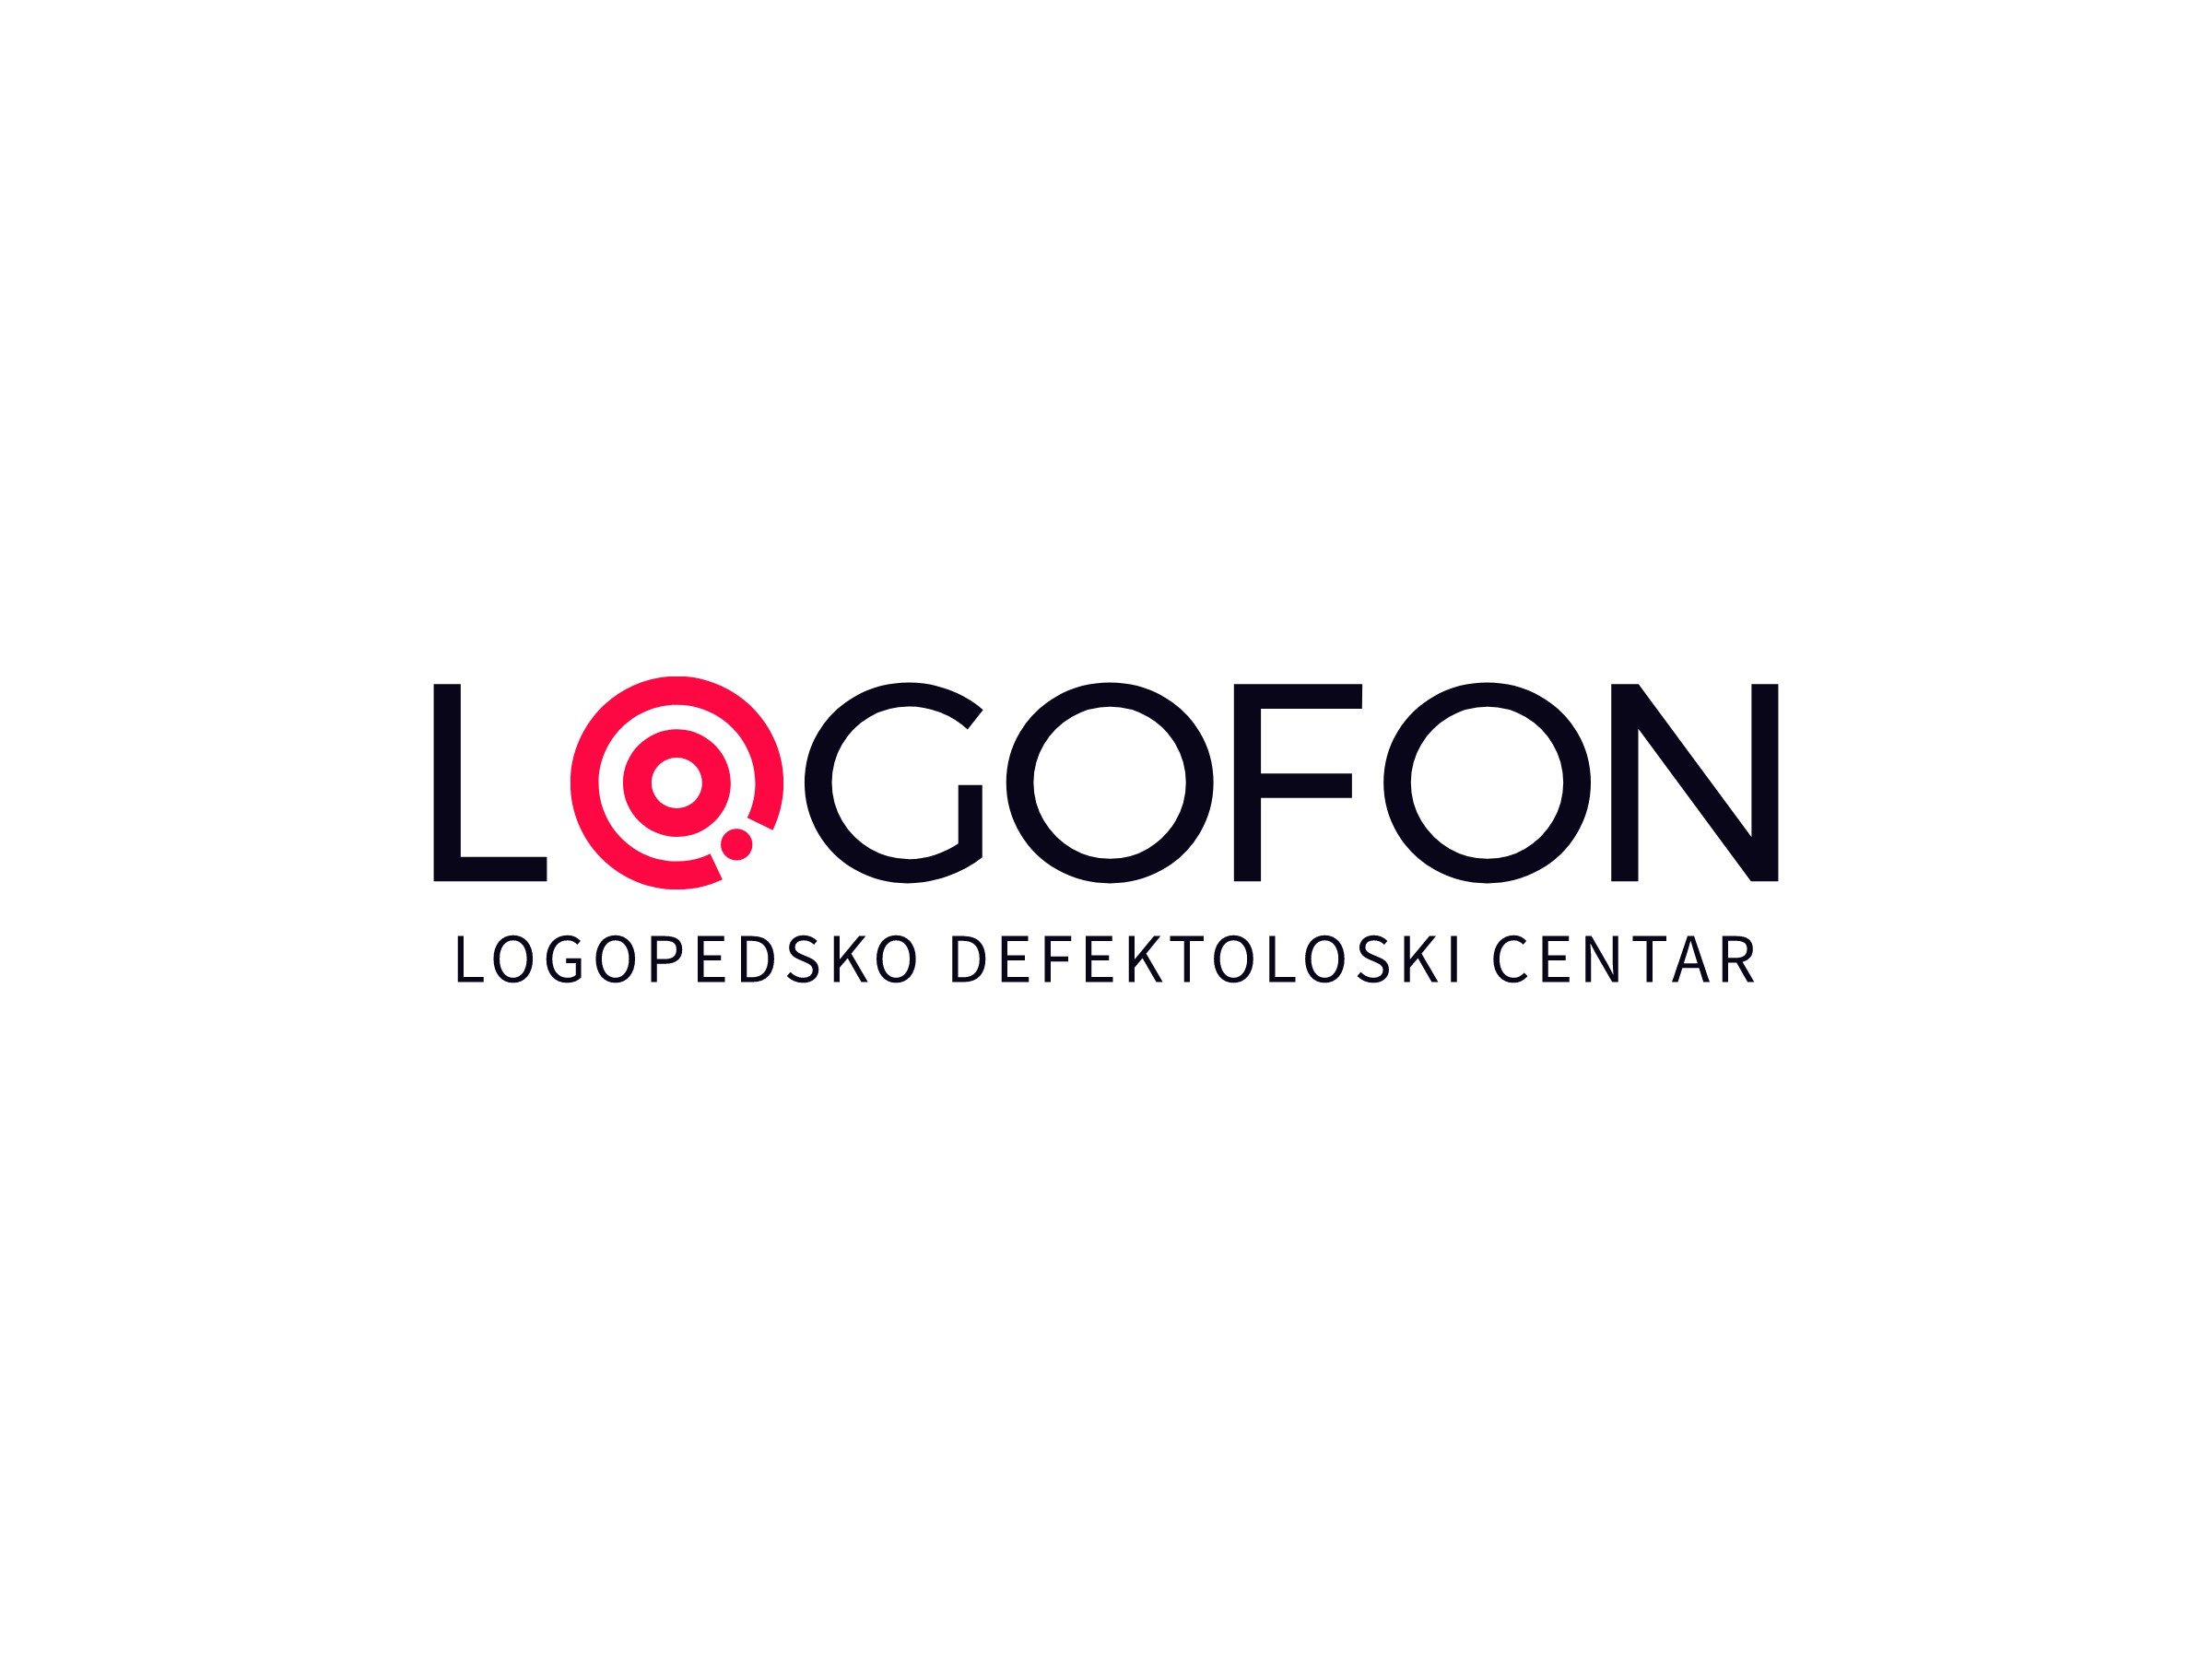 LOGOFON logo design